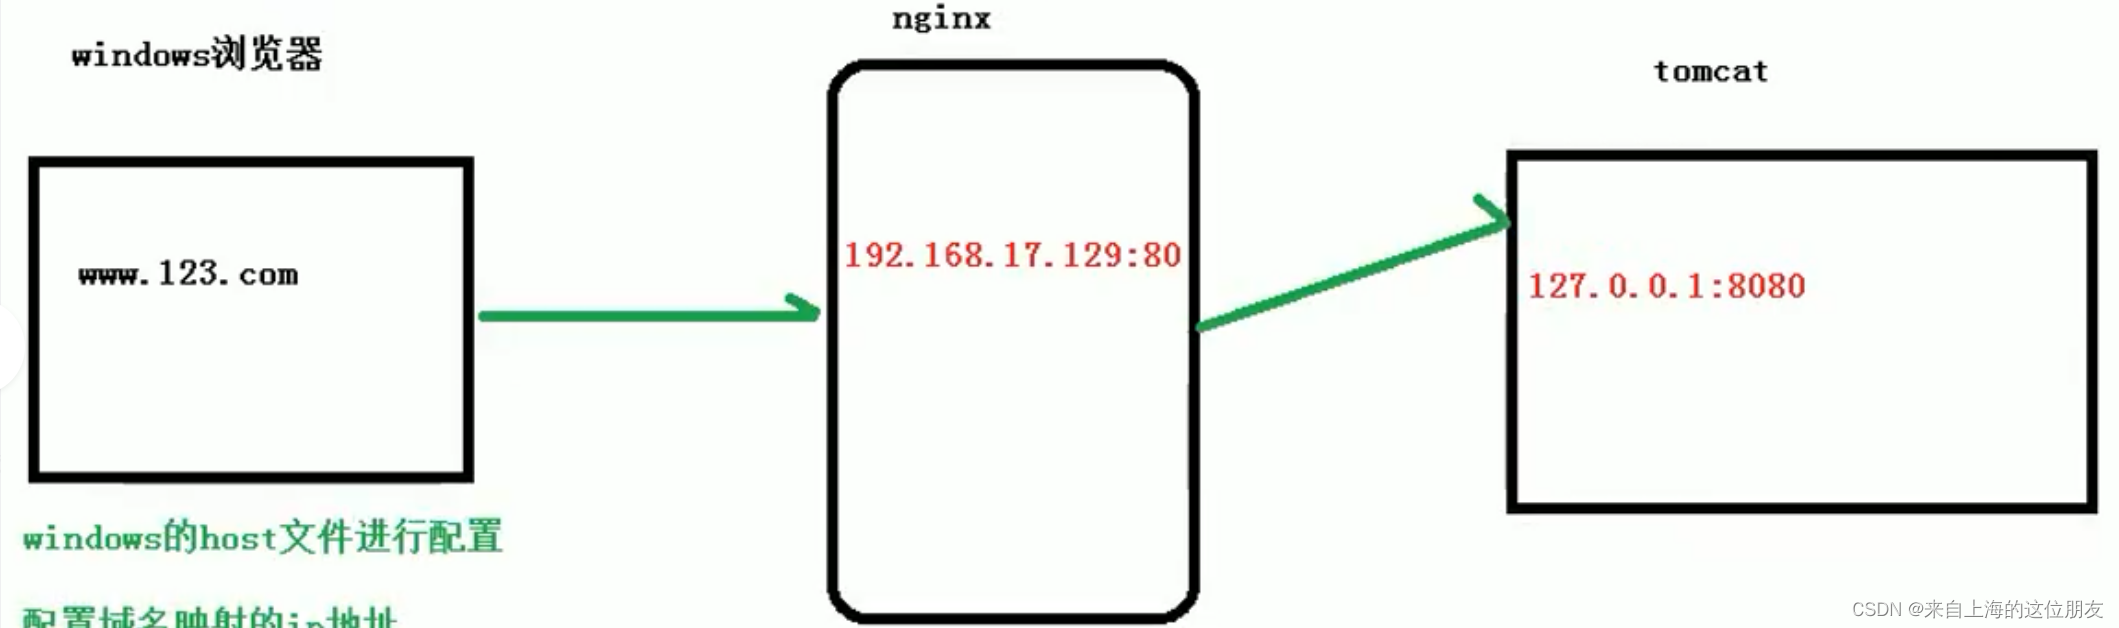 快速了解Nginx的基本介绍